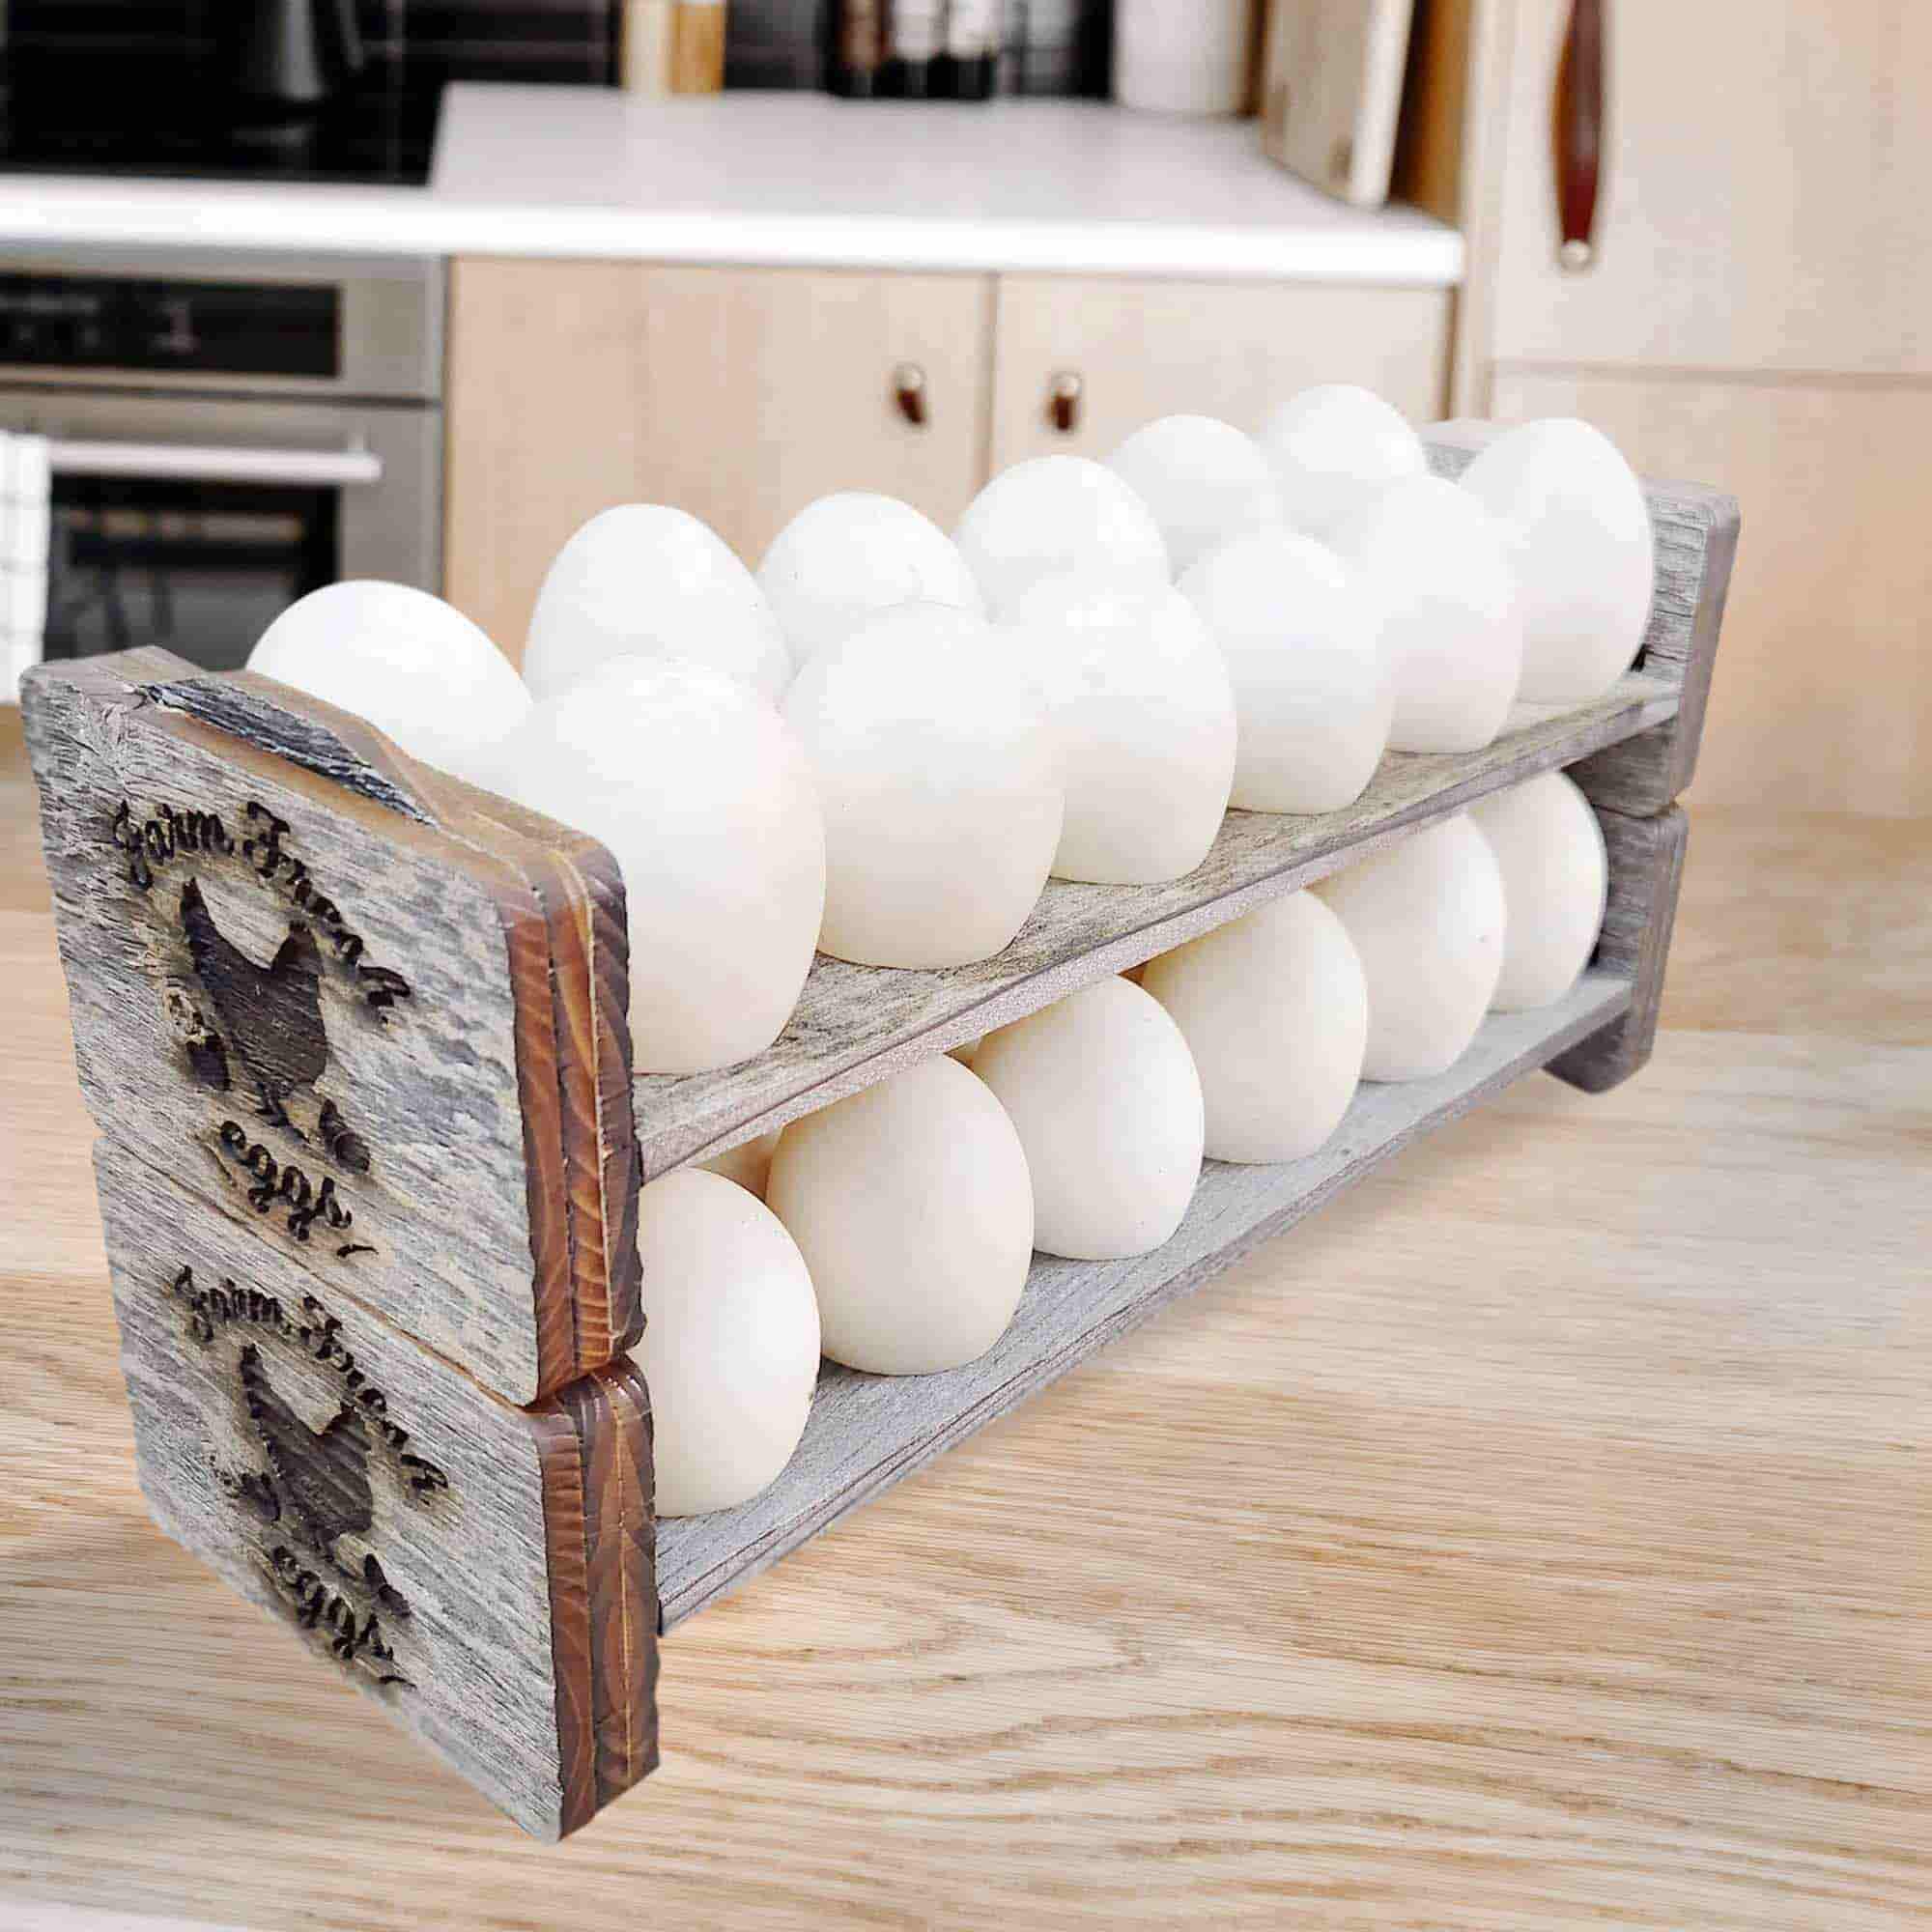 Rora's Roost Fresh Egg Holder Countertop Storage - Stackable Wooden Egg Holder for Various Egg Sizes - Egg Rack for Fresh Eggs w/Ergonomic Handles - Farmhouse